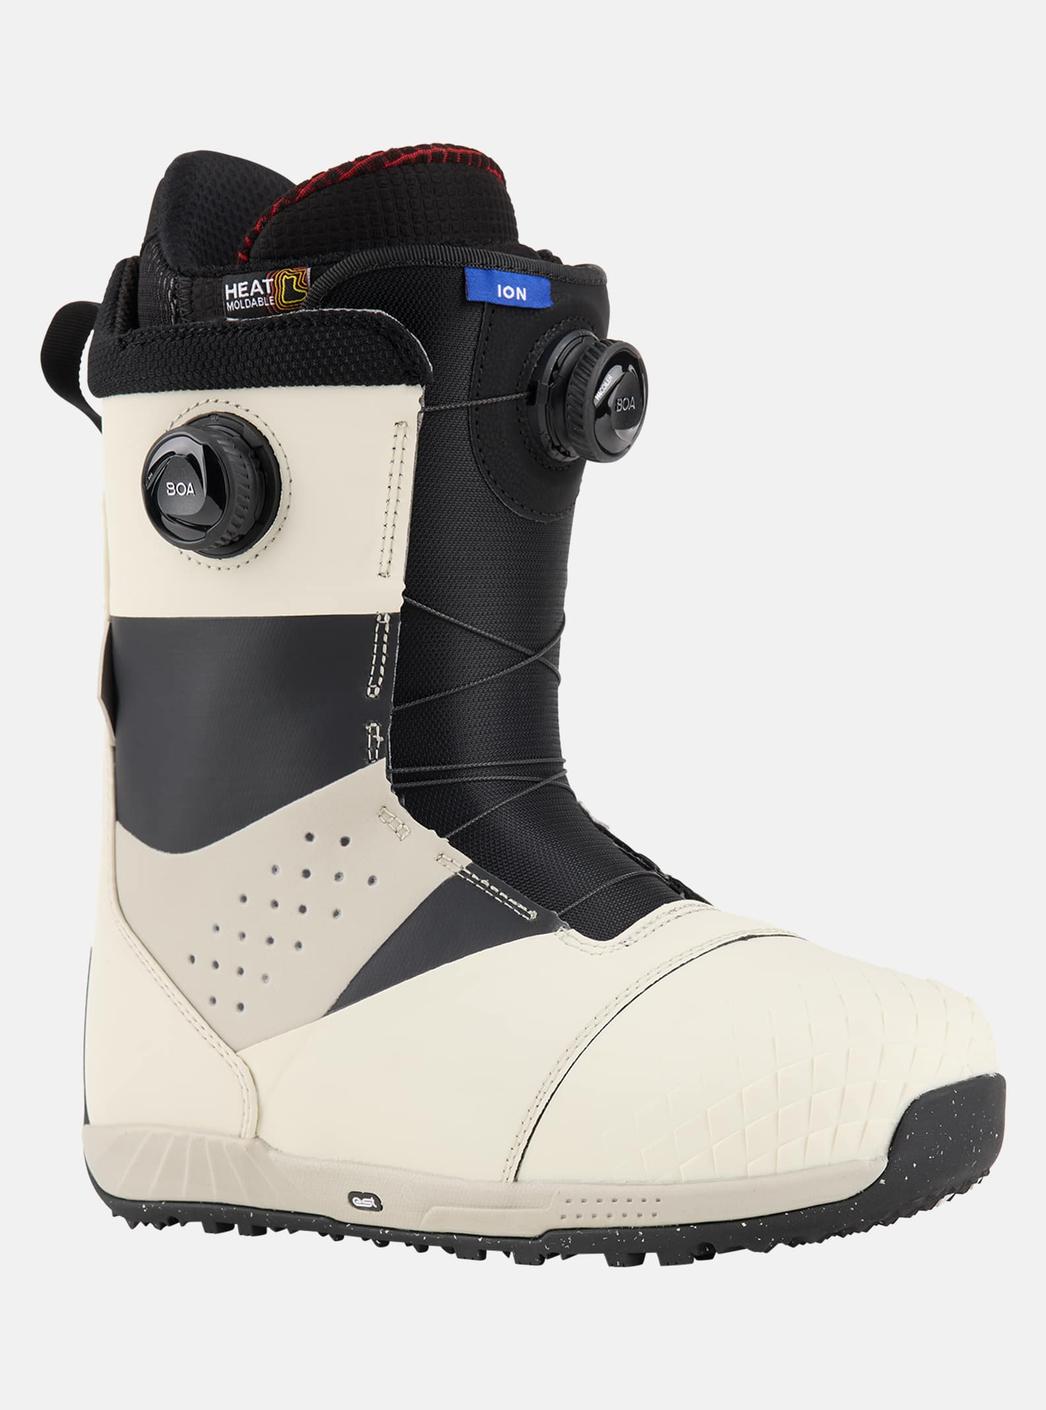 Burton - Boots de snowboard Ion BOA® homme offre à 483,33€ sur Burton of London